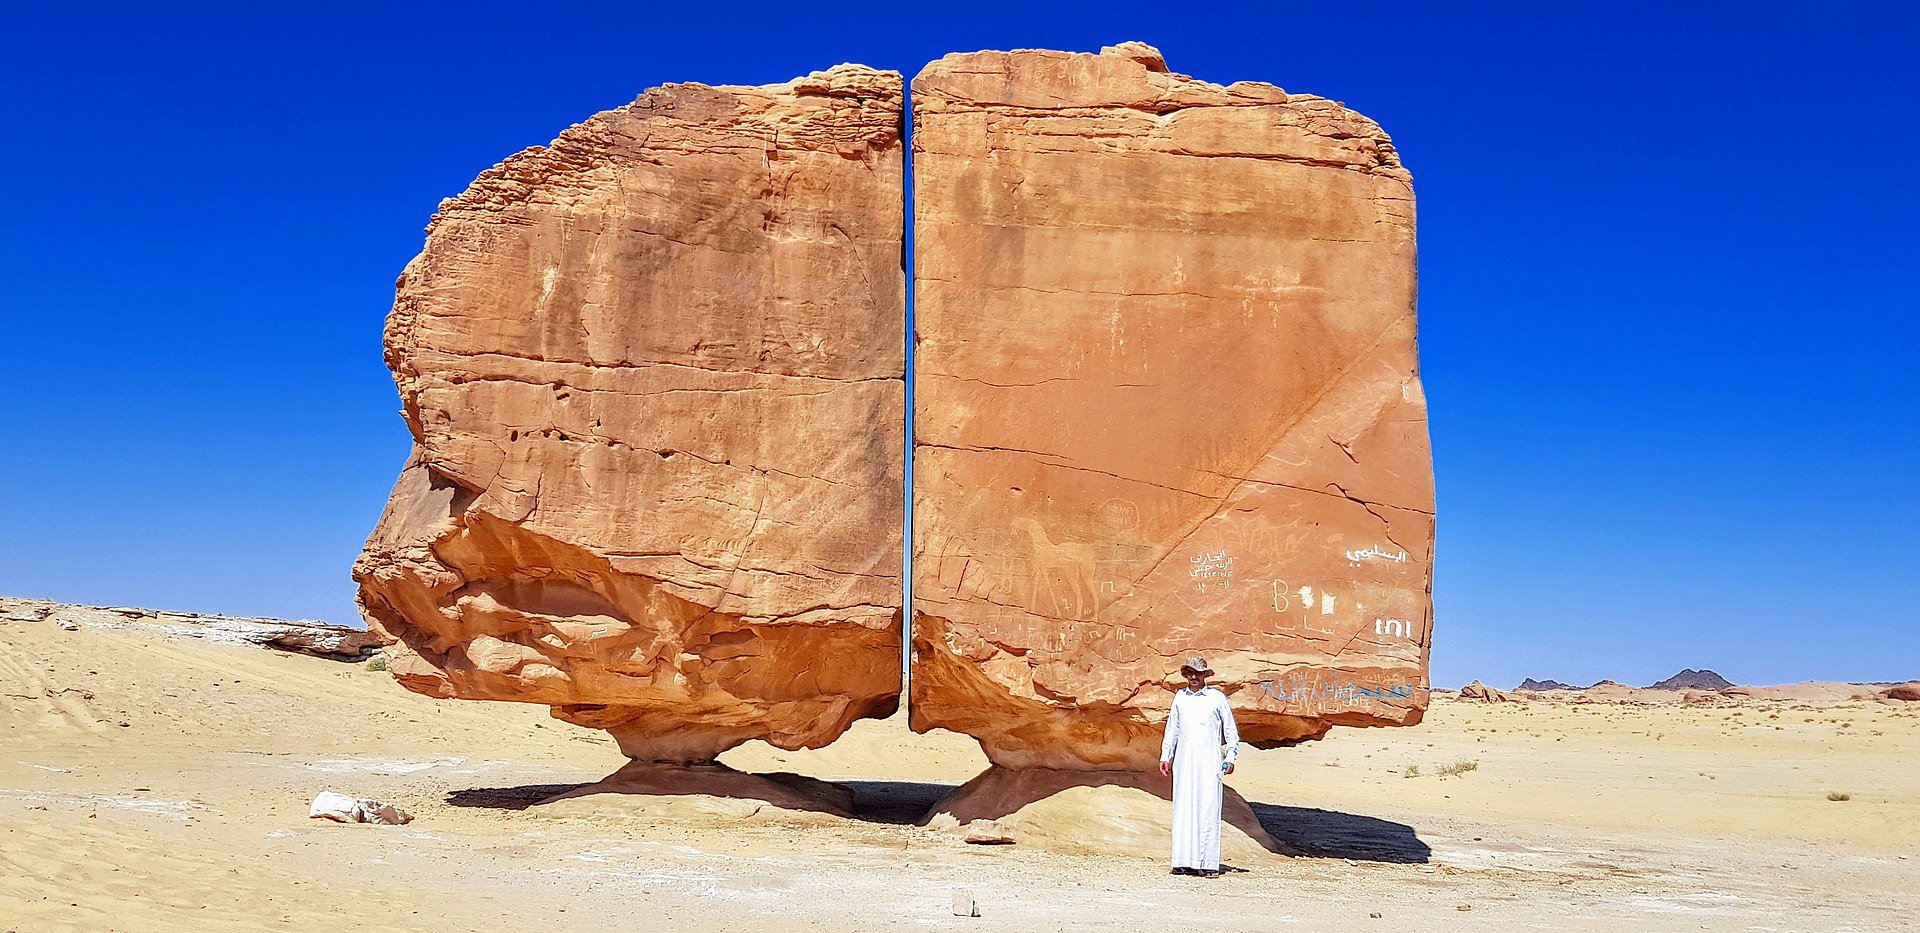 Űrlények vághattak ketté egy sziklát a sivatagban, festményeket is felfedeztek rajta